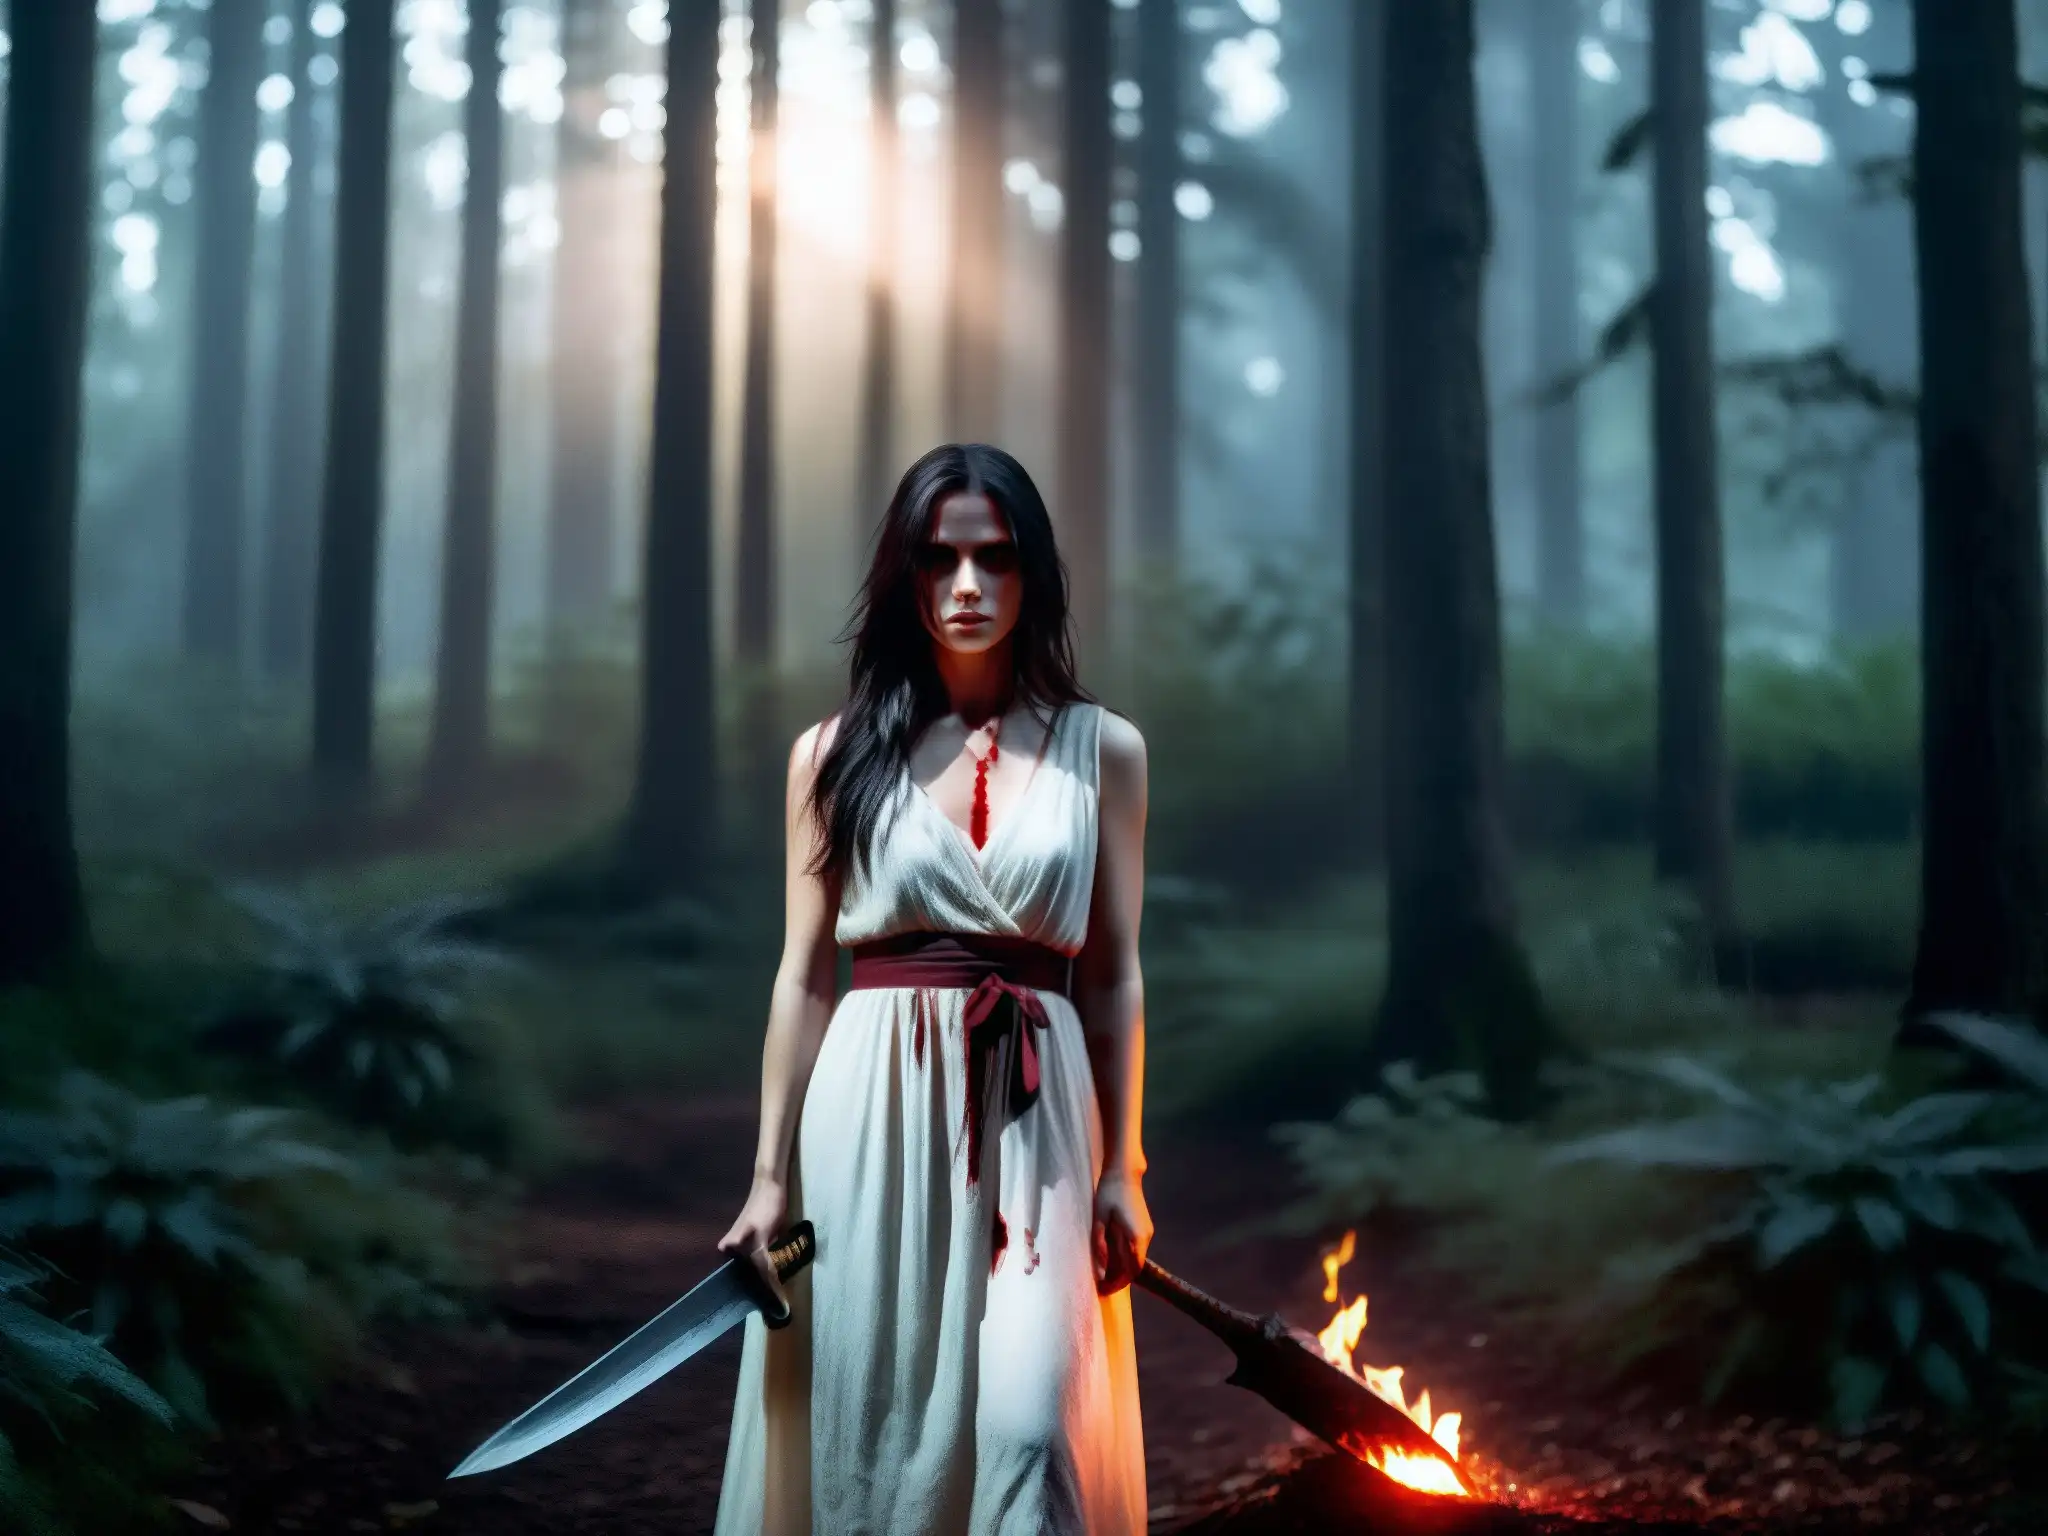 La Sayona, mitología venezolana: una figura sombría de ojos brillantes, en un bosque oscuro con machete ensangrentado, emana furia vengativa